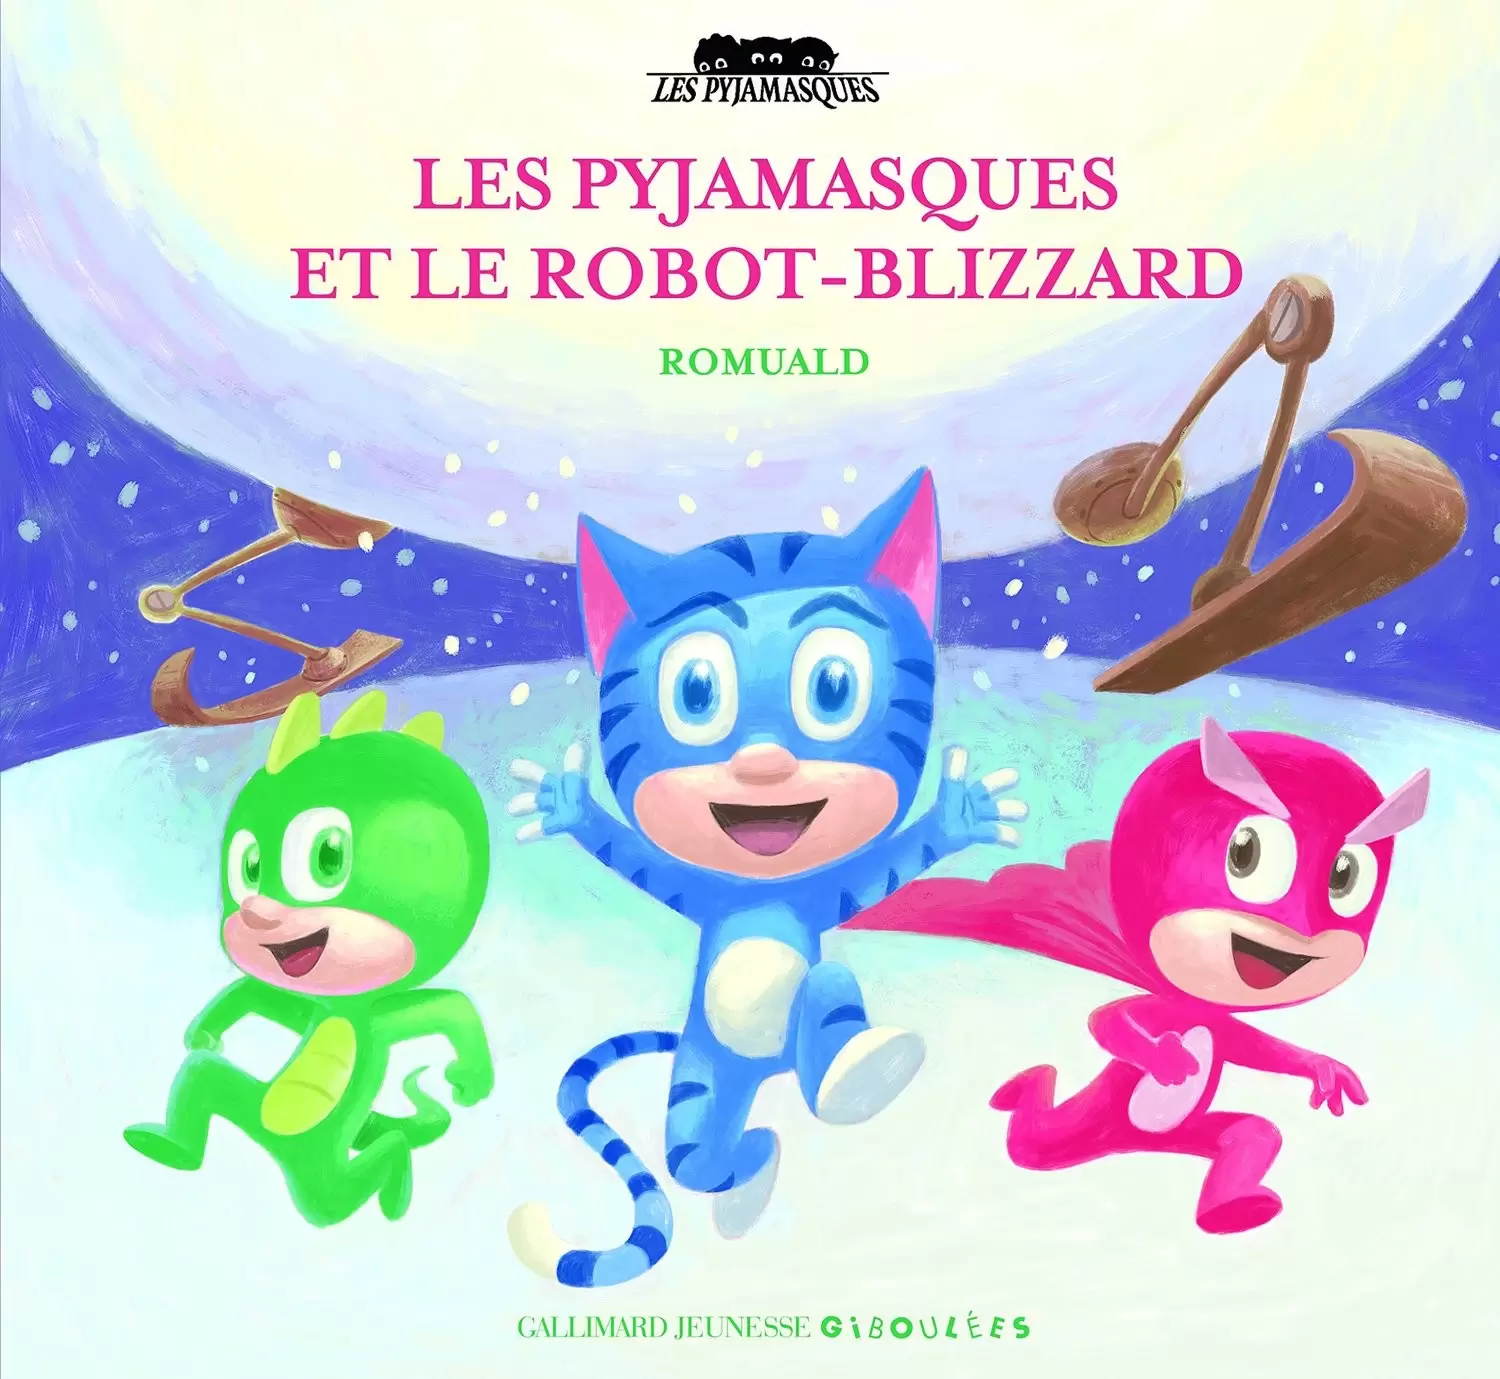 Pyjamasques - Les Pyjamasques et le robot-blizzard